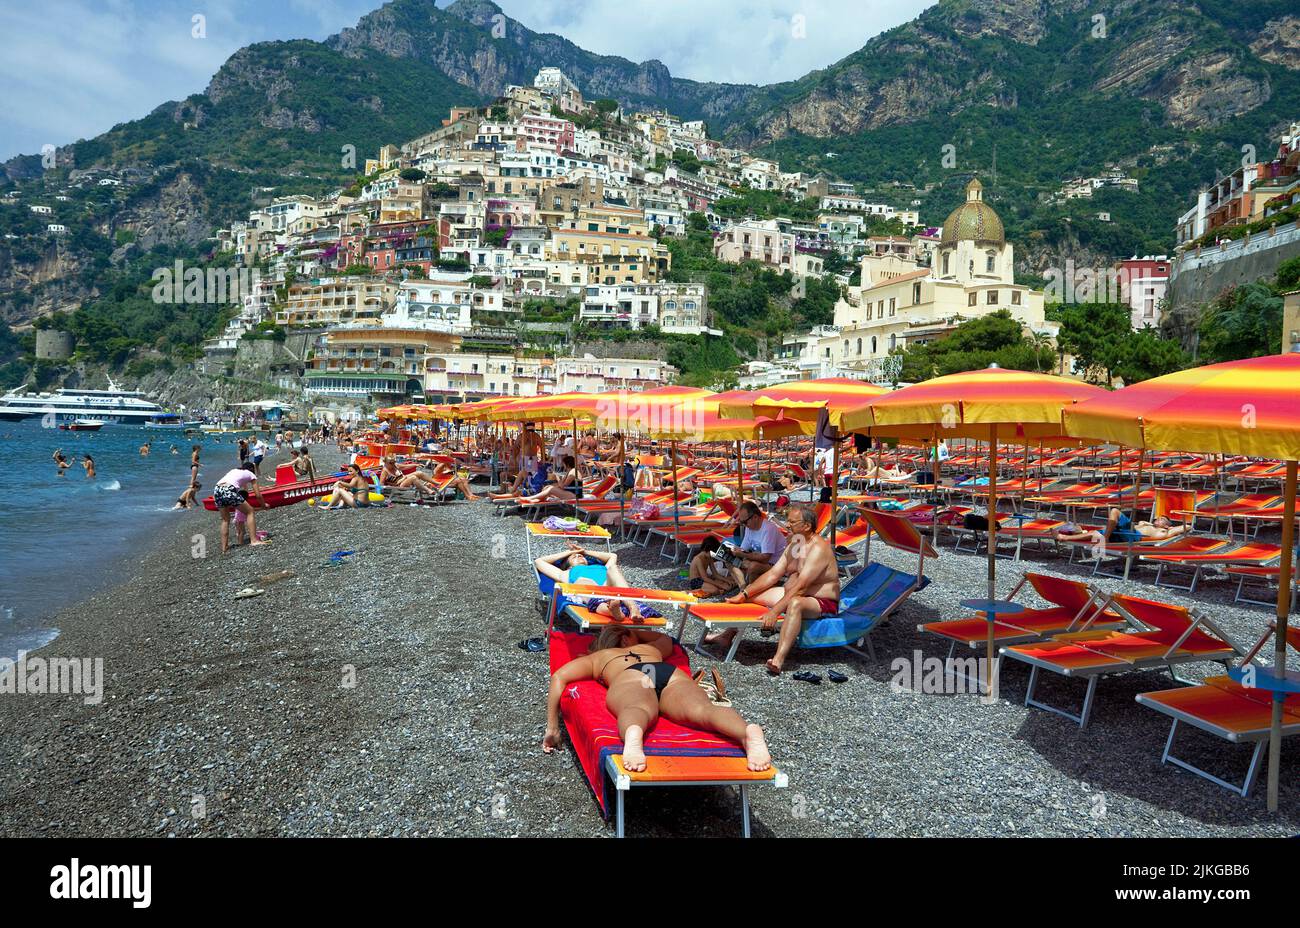 Les gens à la plage du village Positano, côte amalfitaine, site classé au patrimoine mondial de l'UNESCO, Campanie, Italie, Europe Banque D'Images